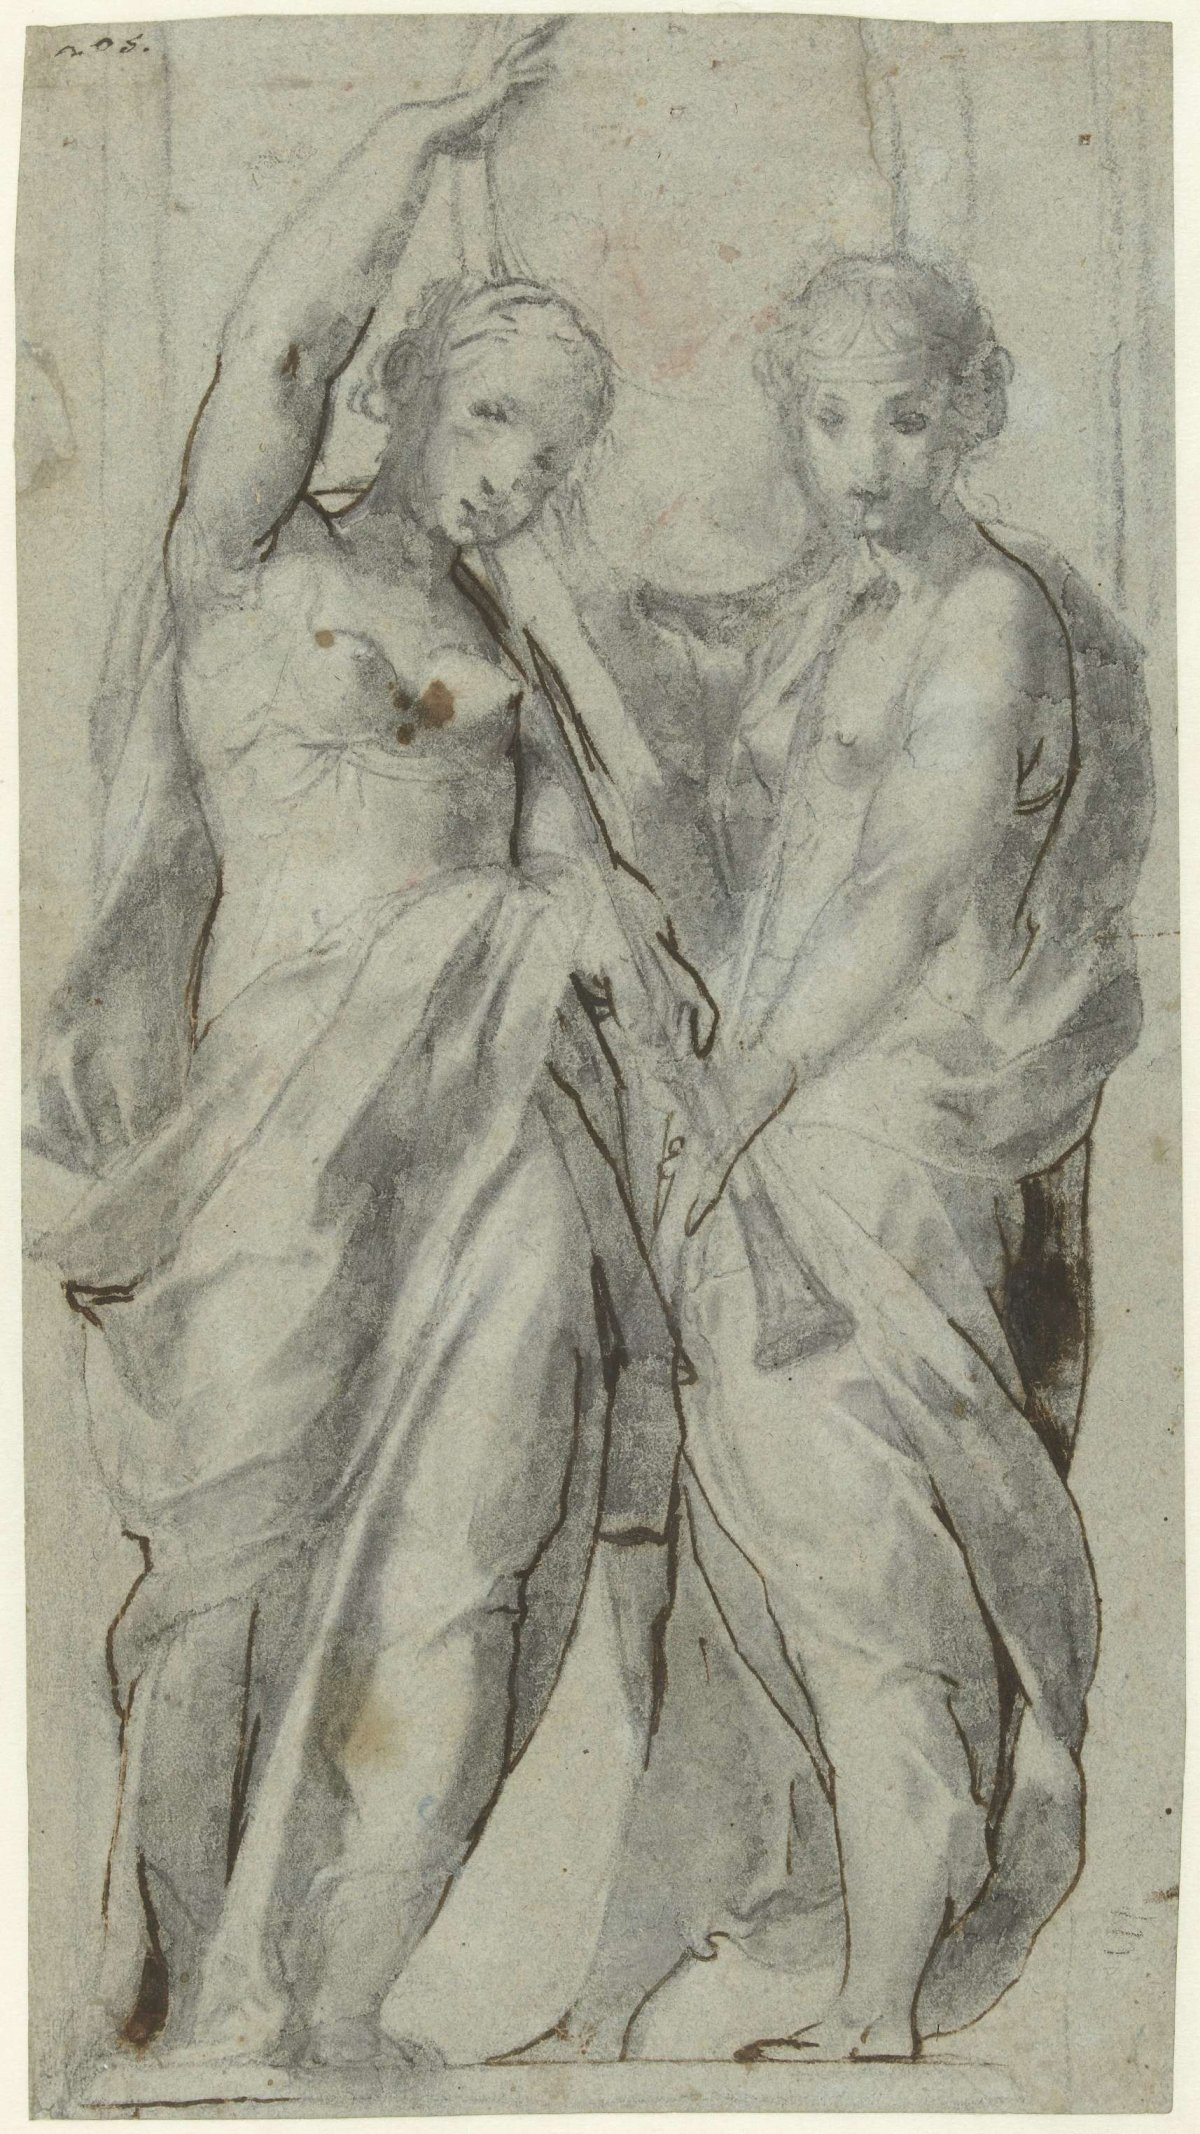 Two Women with Trumpets, Giulio Cesare Procaccini, c. 1586 - c. 1588